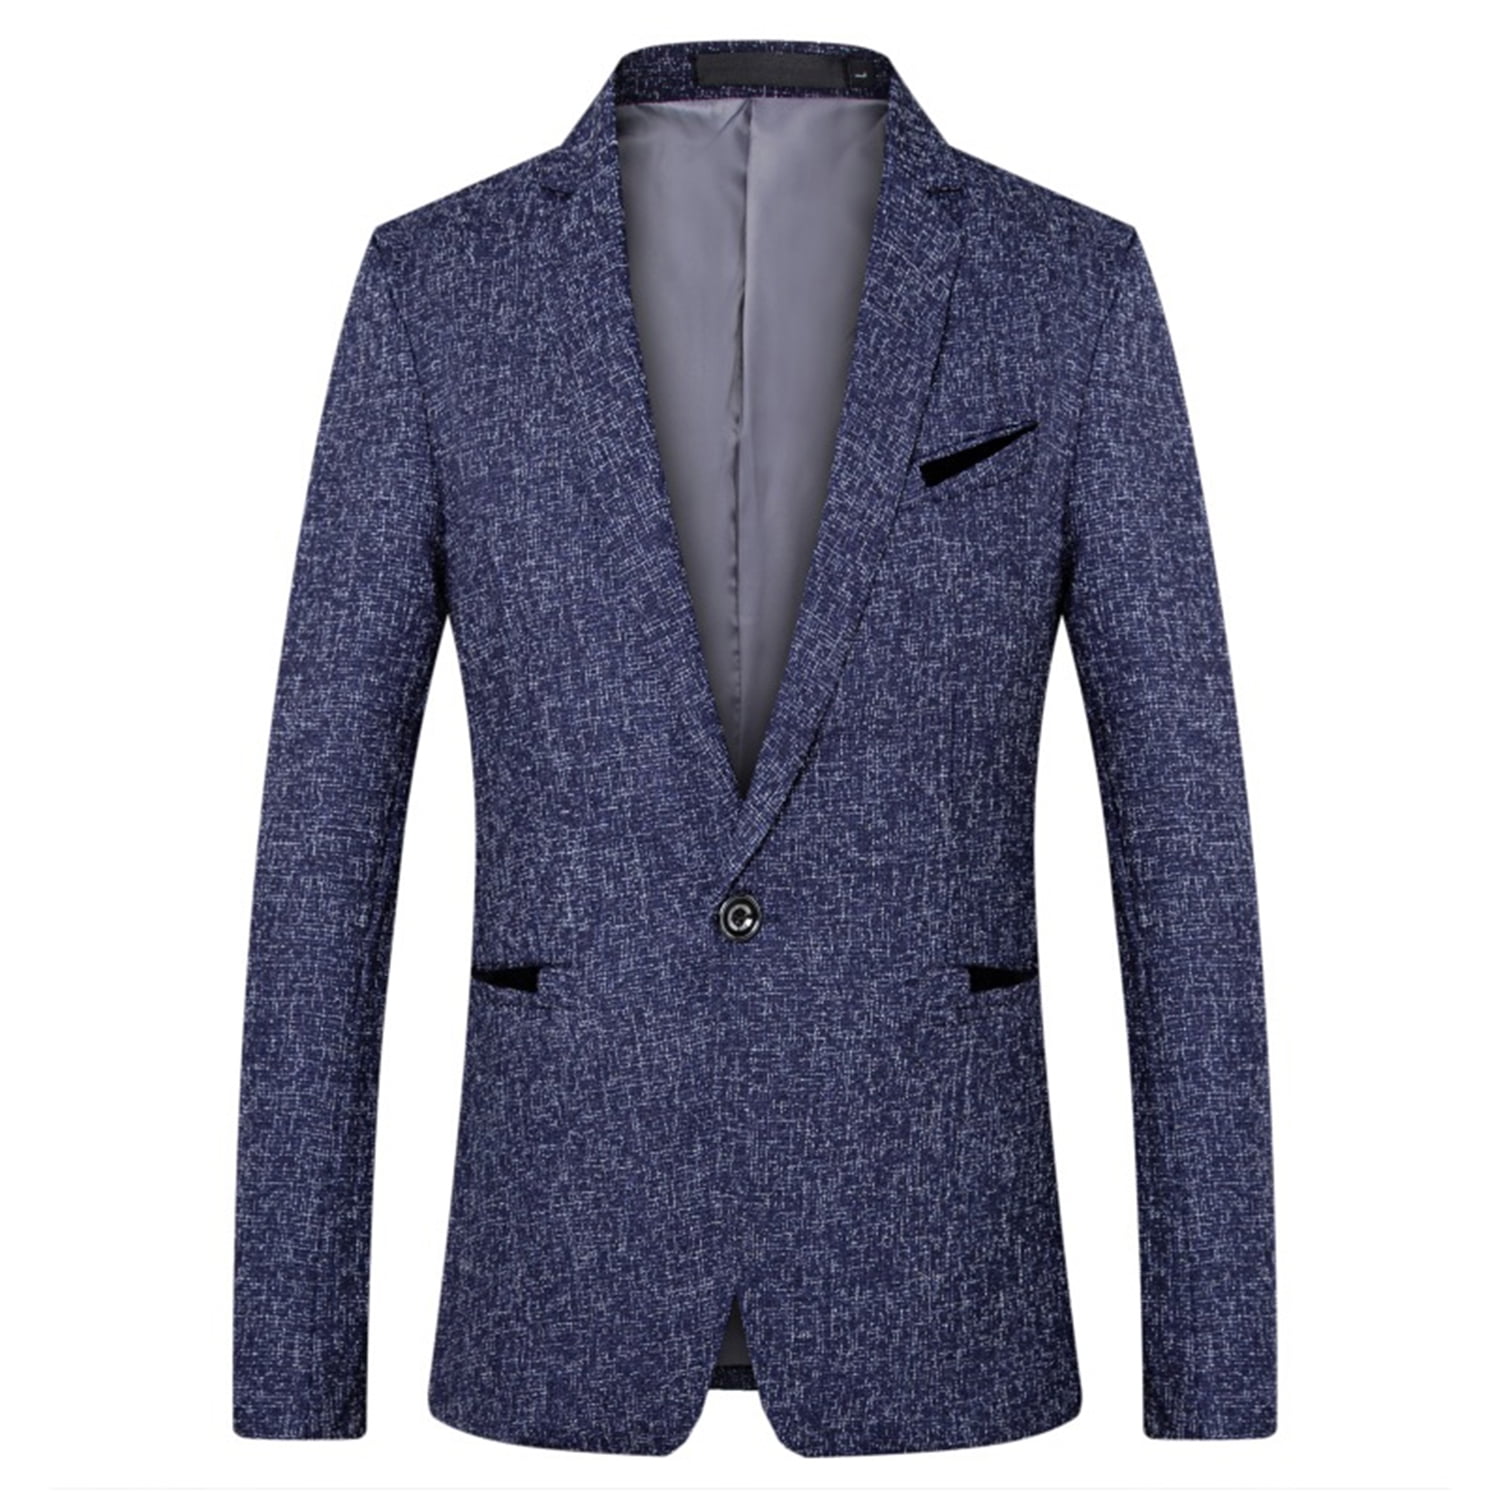 Lu's Chic Men's Business Casual Suit Jacket Cozy Sport Coat Slim Fit ...